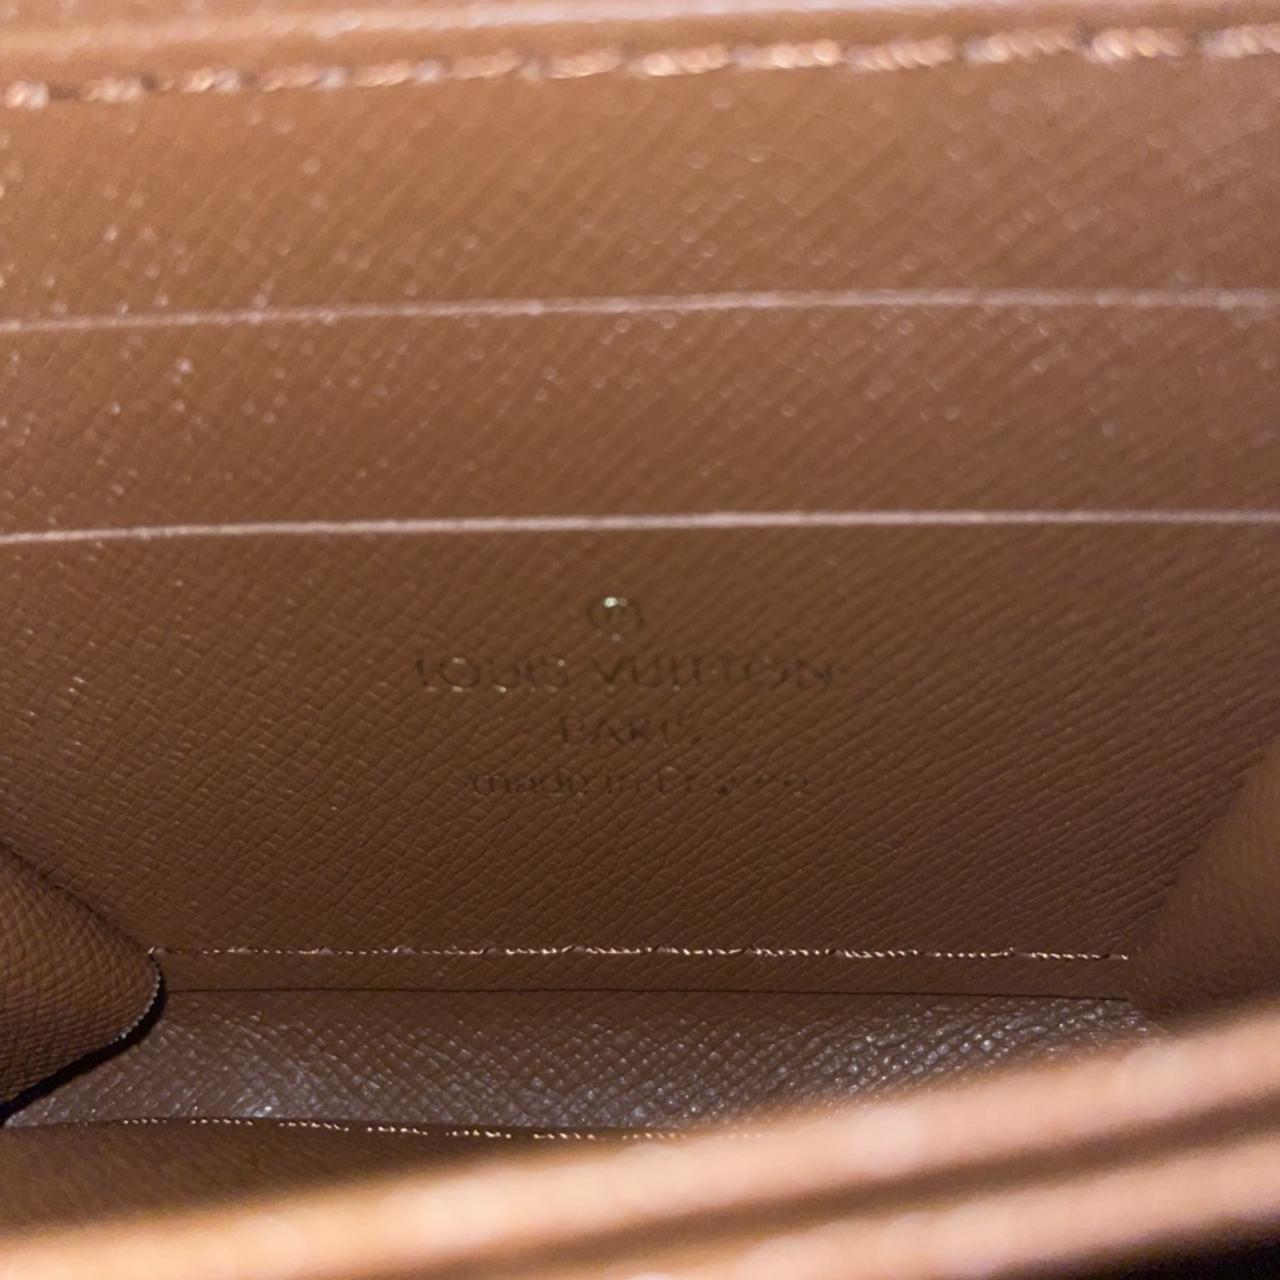 Louis Vuitton Wallet Women's (DO NOT BUY!) -- • I am - Depop